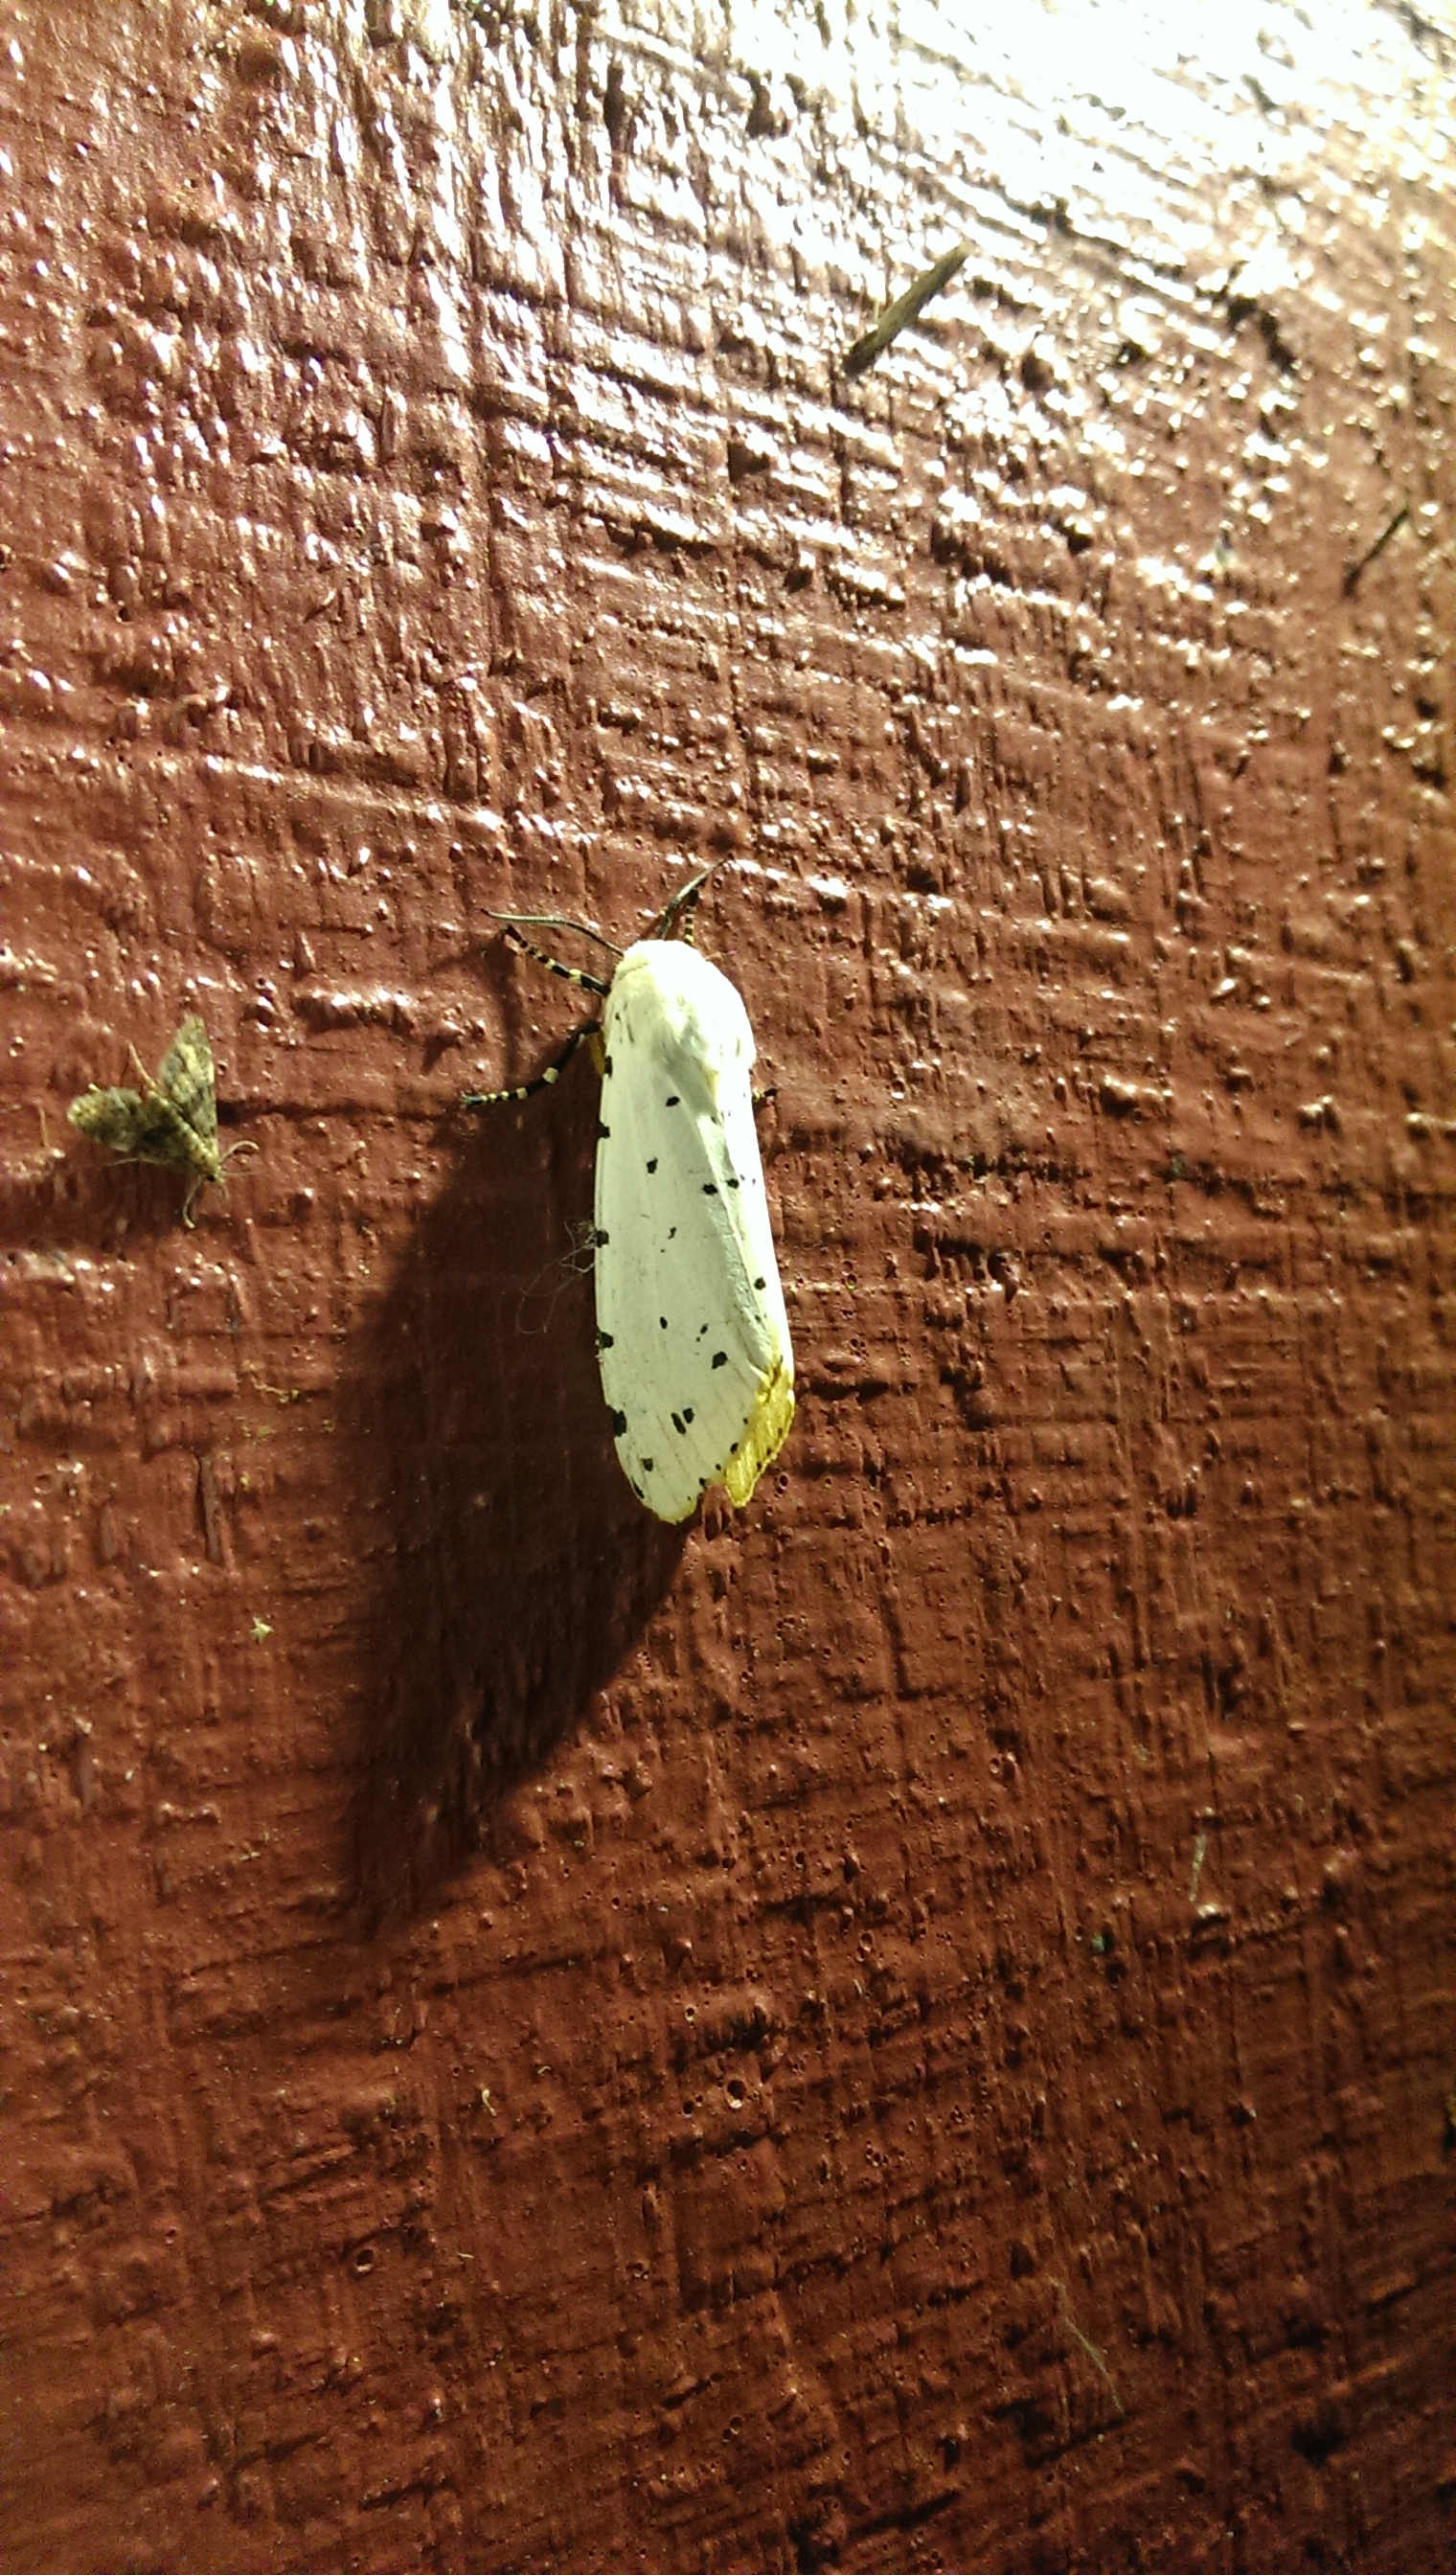 Florida moth